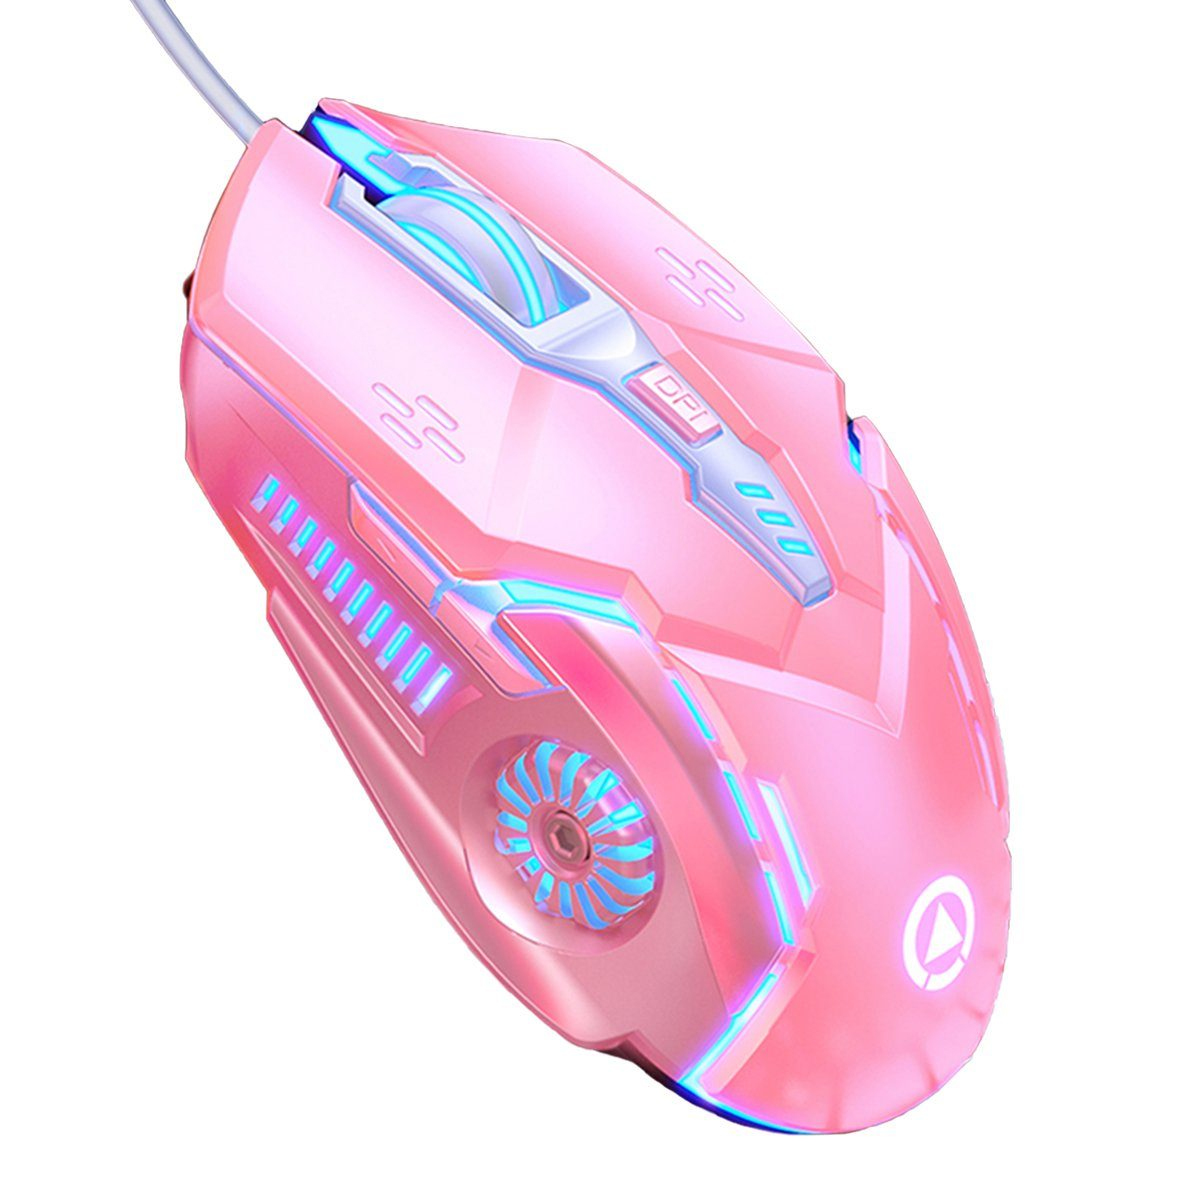 KINSI mechanische Gaming-Maus rosa Maus,Sound-Maus,Gaming-Maus,6-Tasten Maus, Maus,kabelgebundene